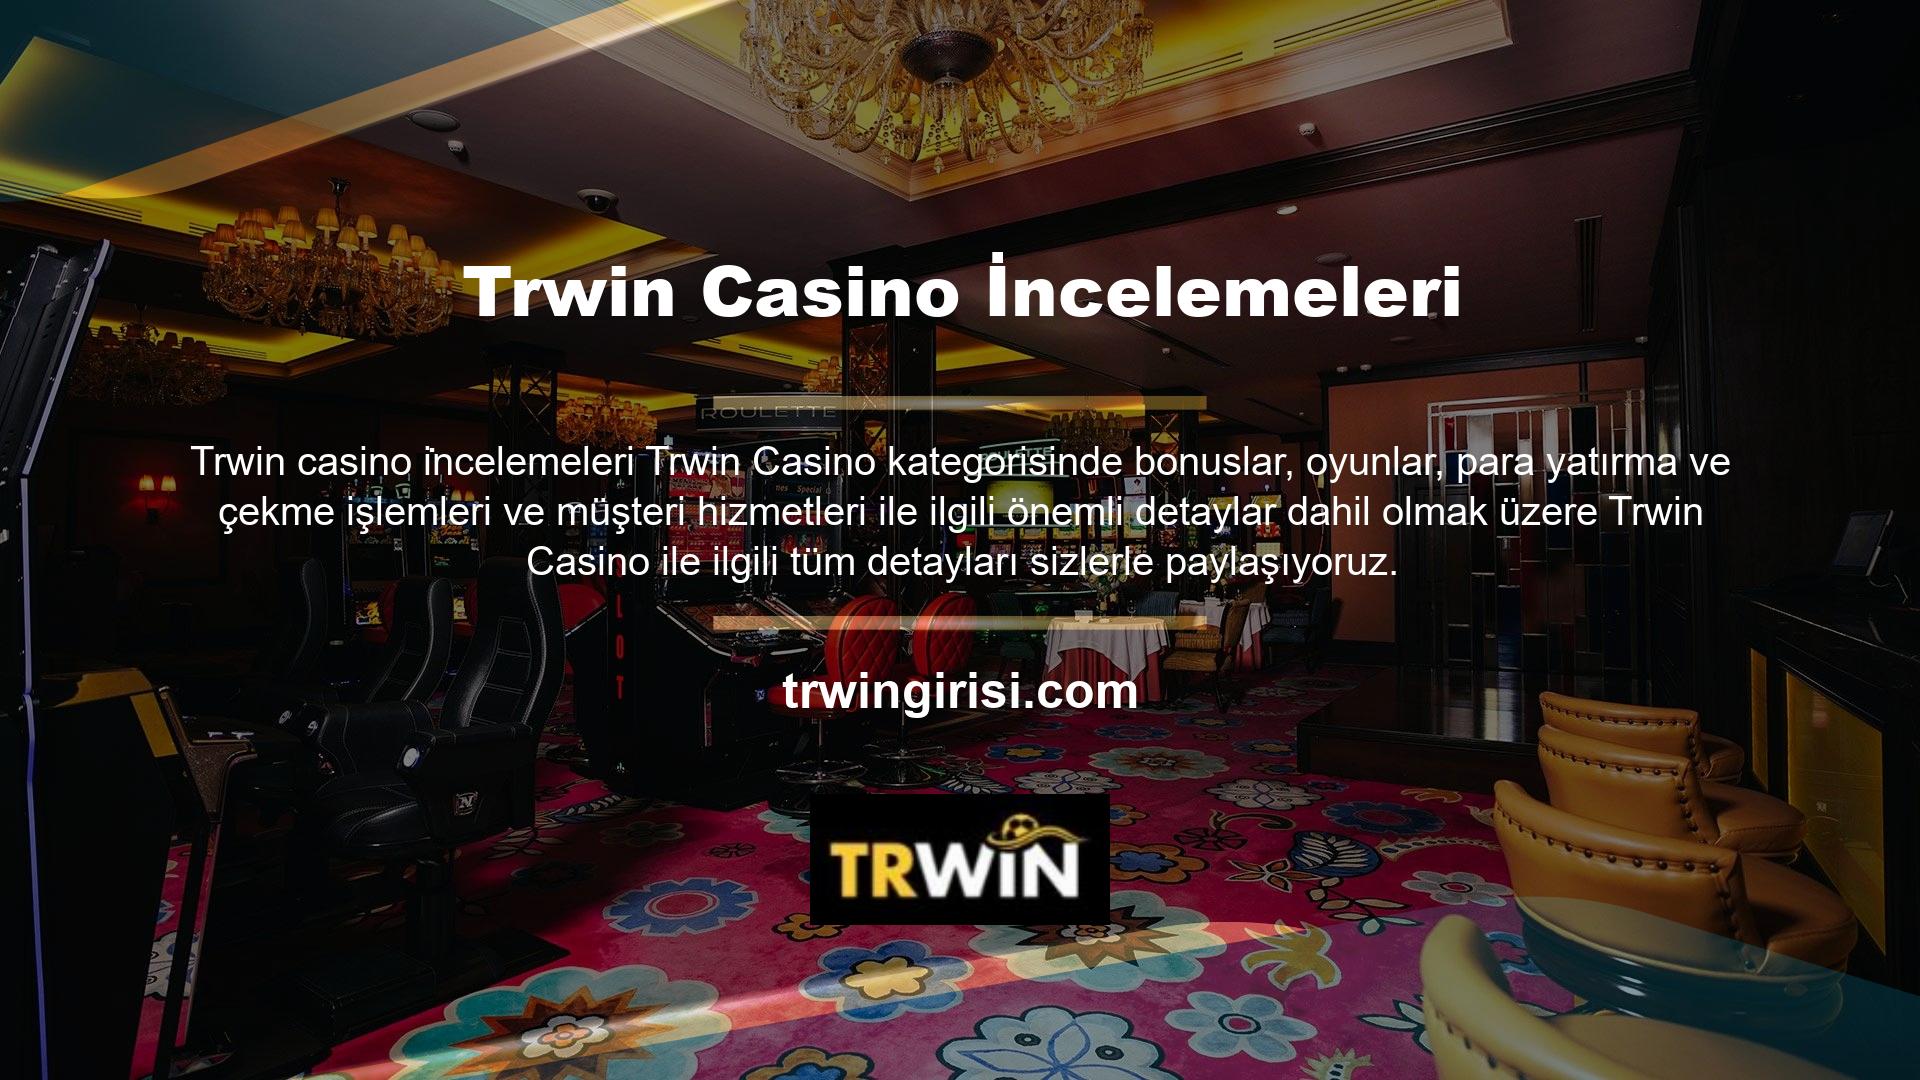 Trwin casino incelemeleri ile en iyi bahis sitelerinden biridir